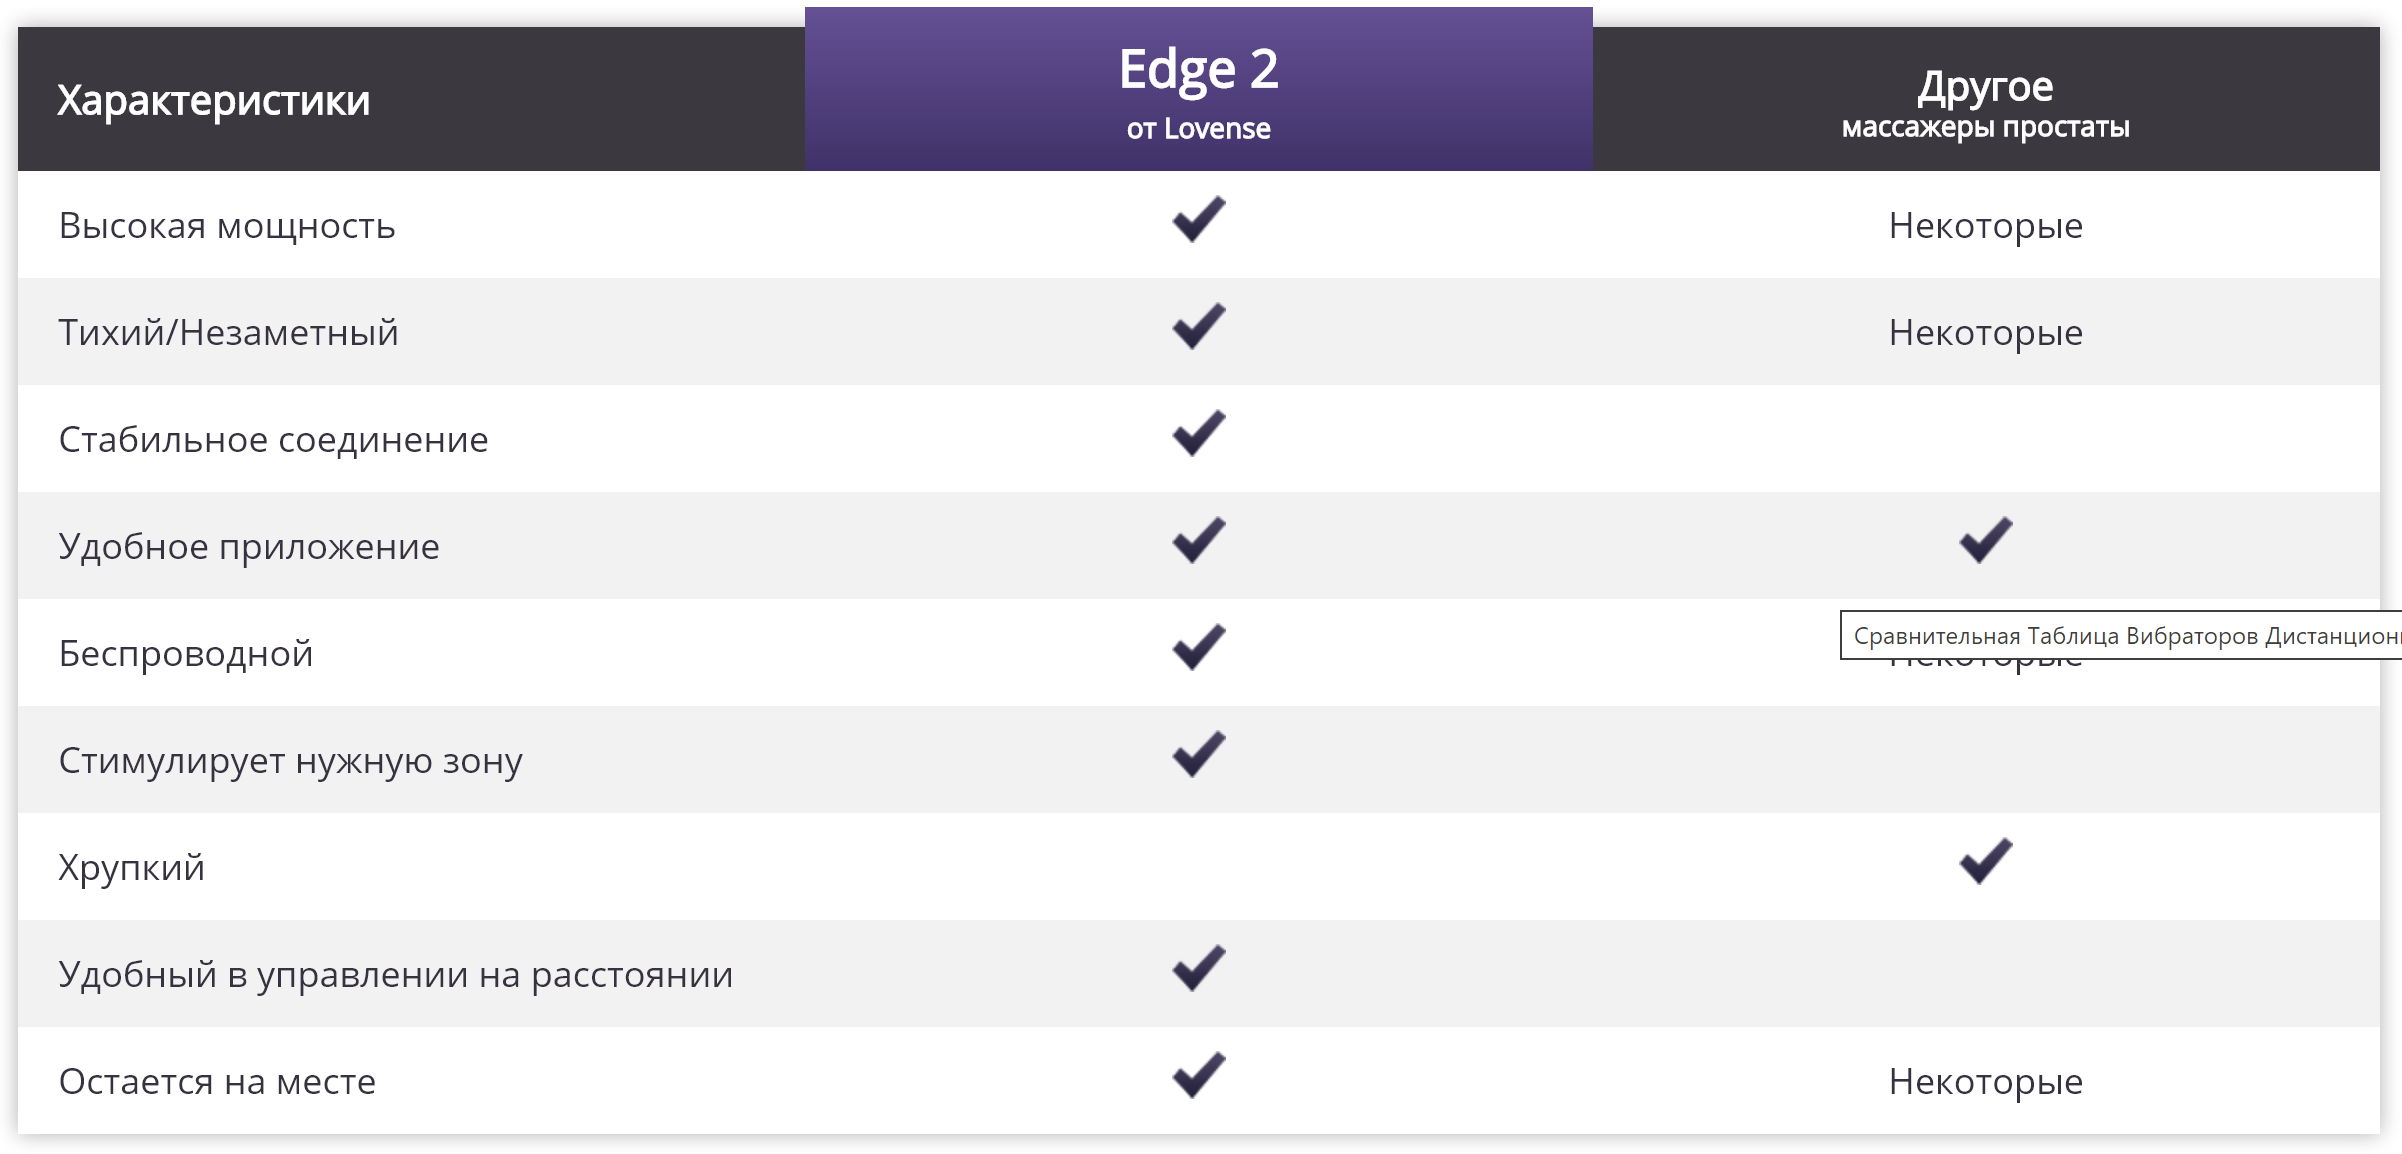 Сравнение Edge 2 с аналогами